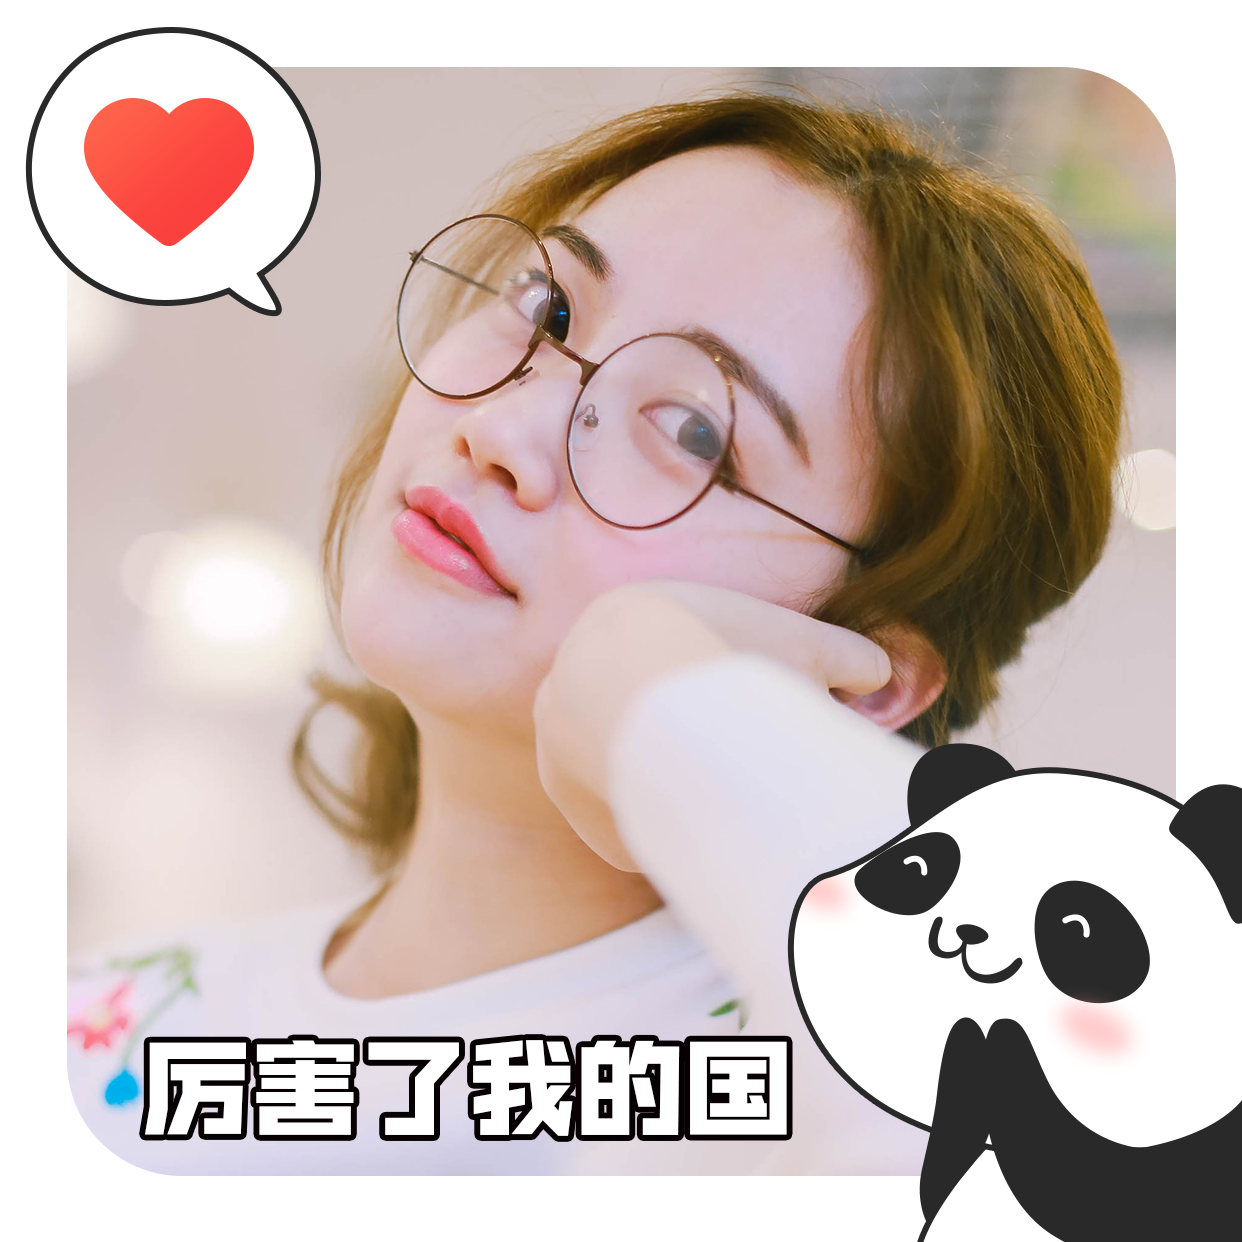 国庆可爱熊猫微信头像预览效果